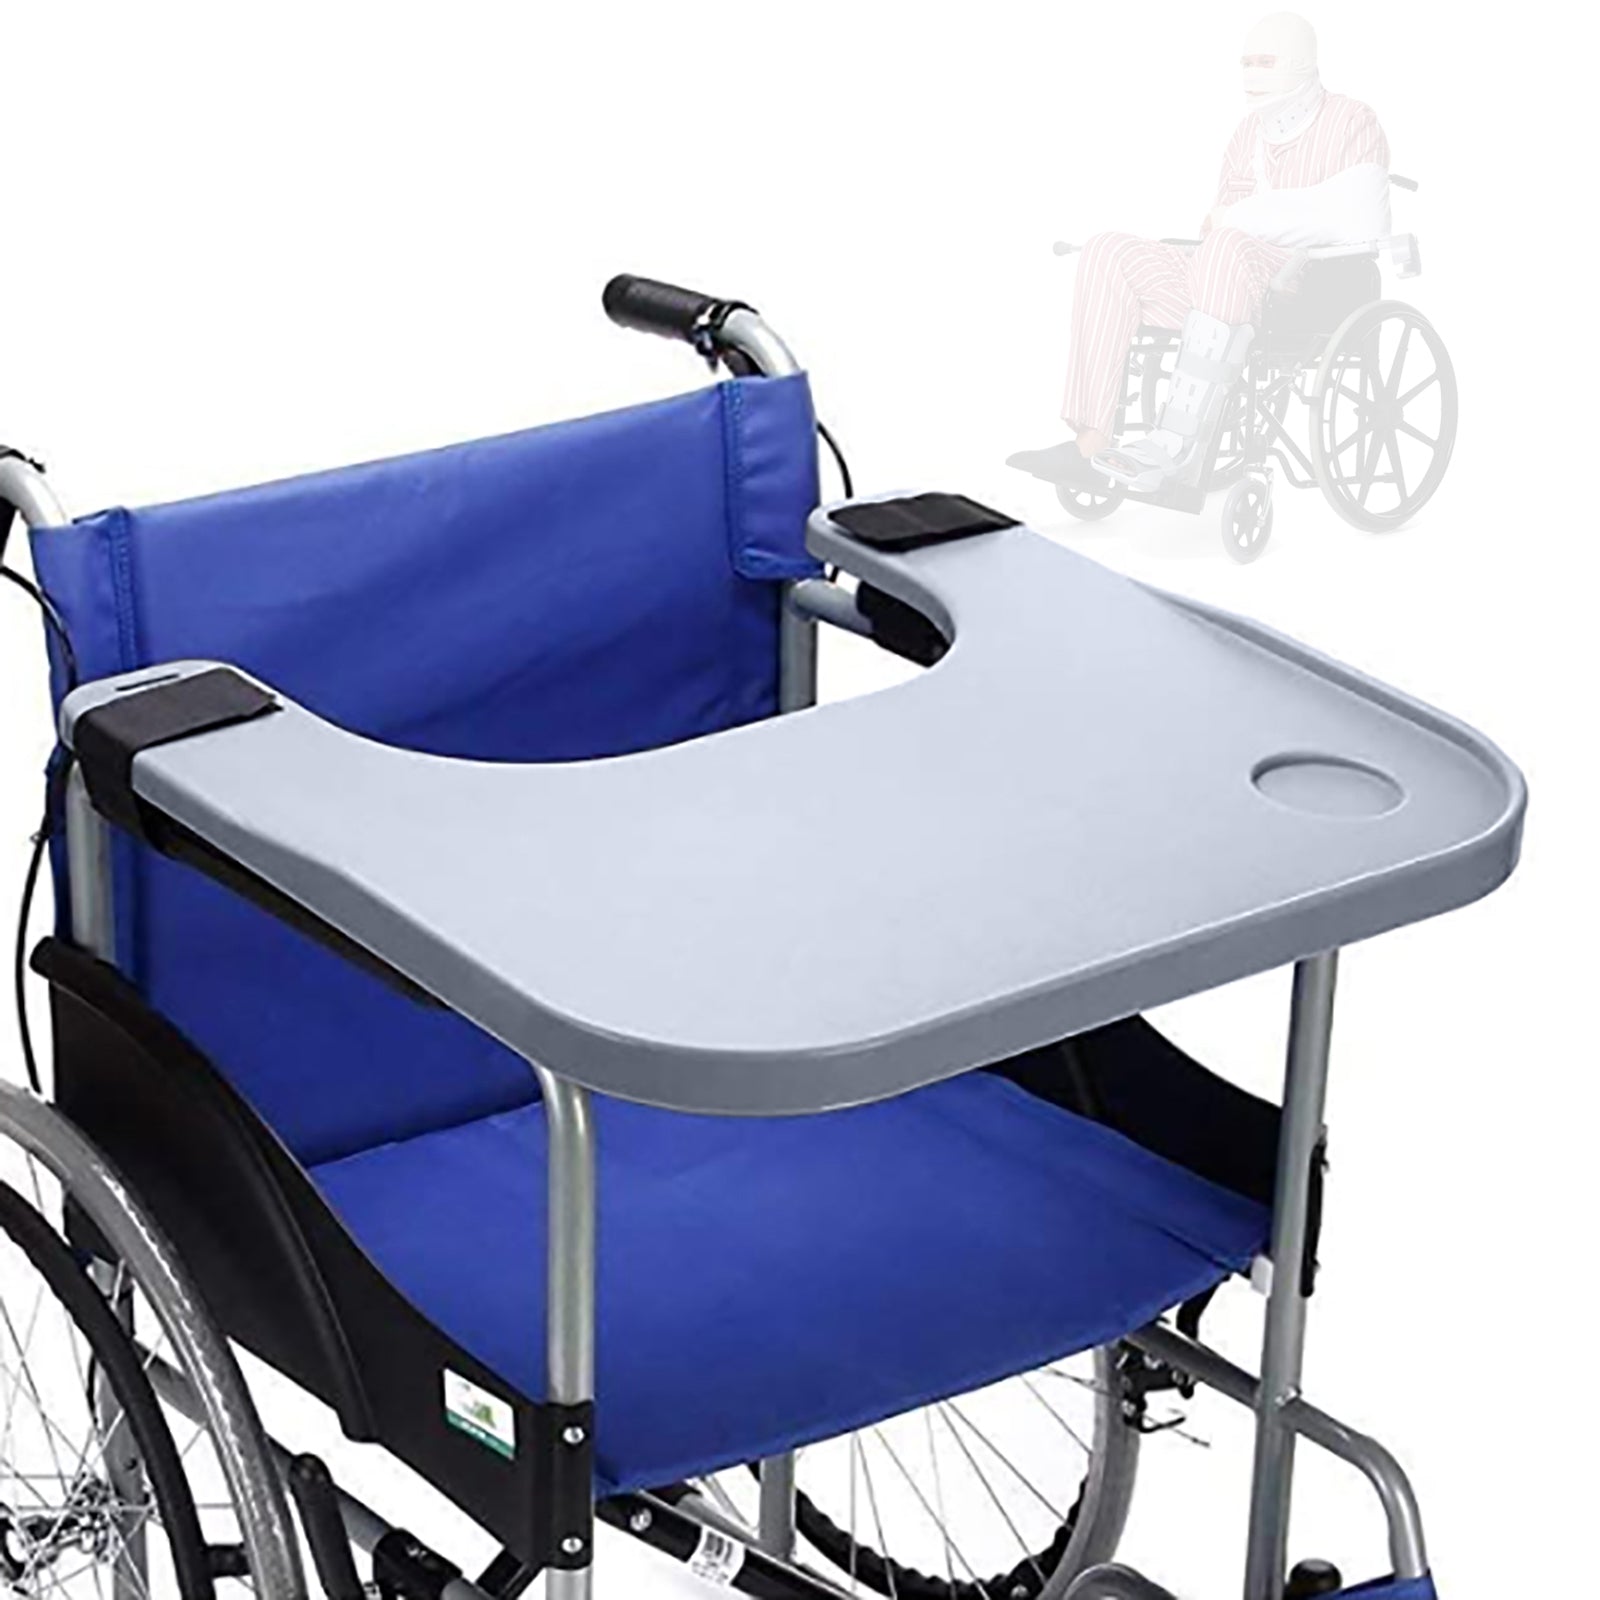 Vassoio universale per sedia a rotelle in ABS con 2 portabevande,per disabili per lettura, pause, cibo